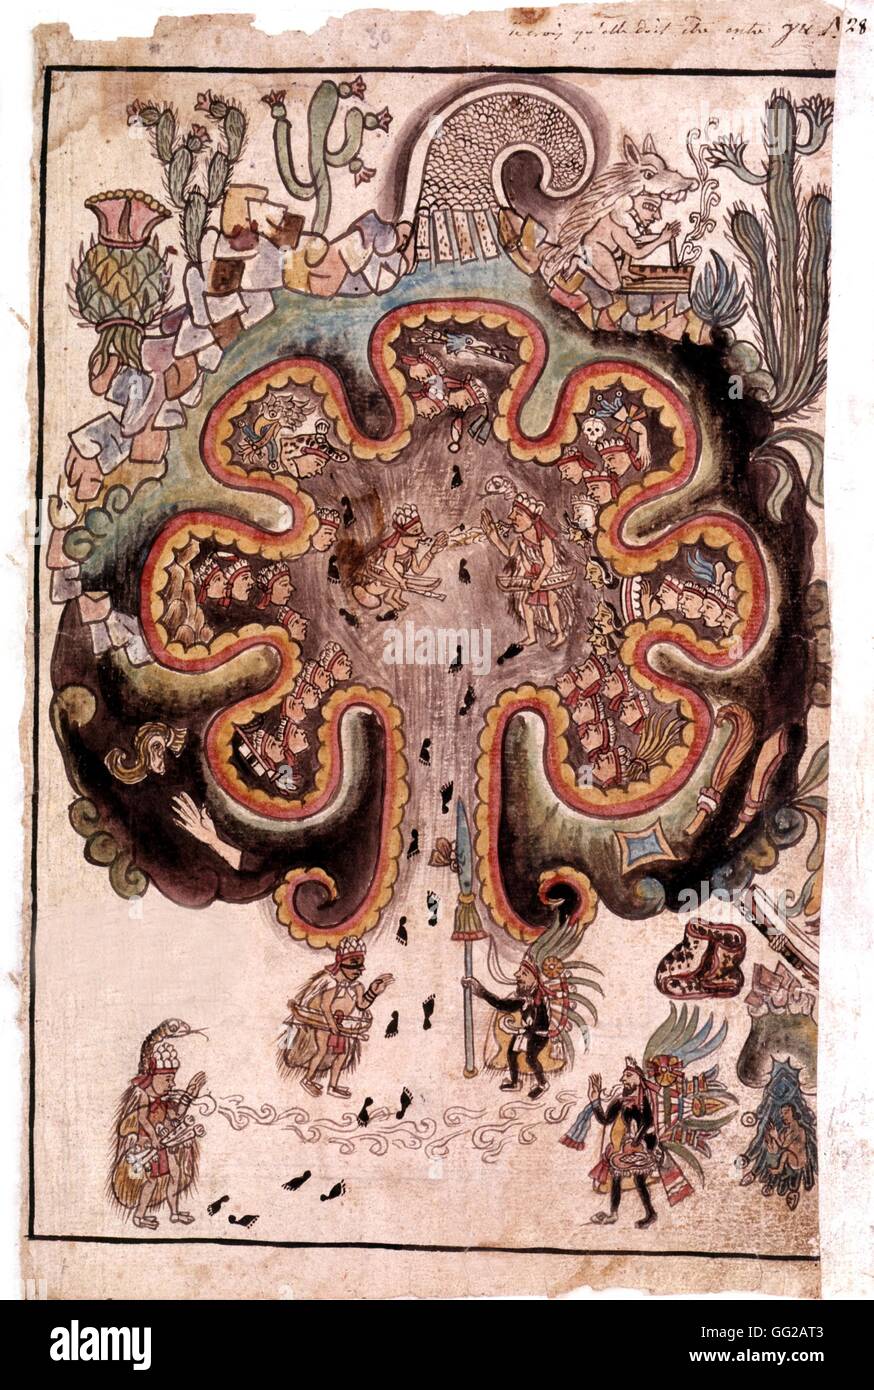 Tolteken Geschichte, mexikanische Manuskript Chitomatoc, ein Wallfahrtsort, wo verschiedene Gruppen der Nahuati Familie versammelt. Am Eingang, die zwei Toltec Häuptlinge. 16. Jahrhundert Mexiko Stockfoto